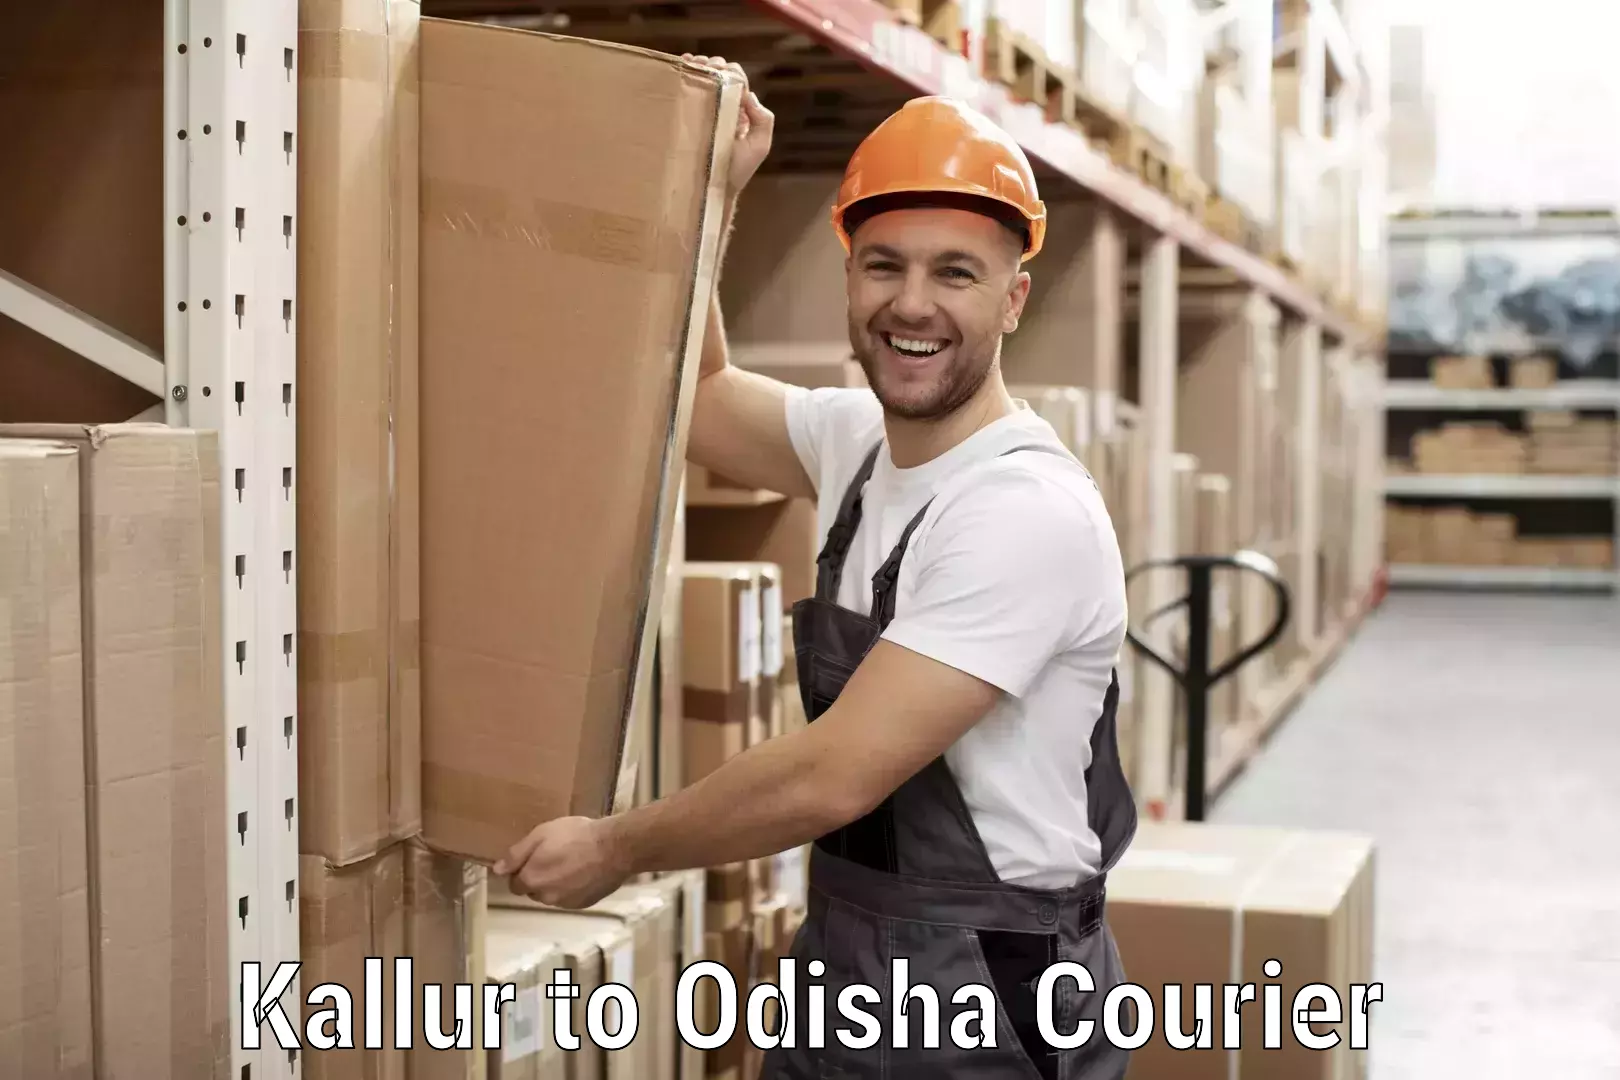 Courier service comparison Kallur to Kalimela